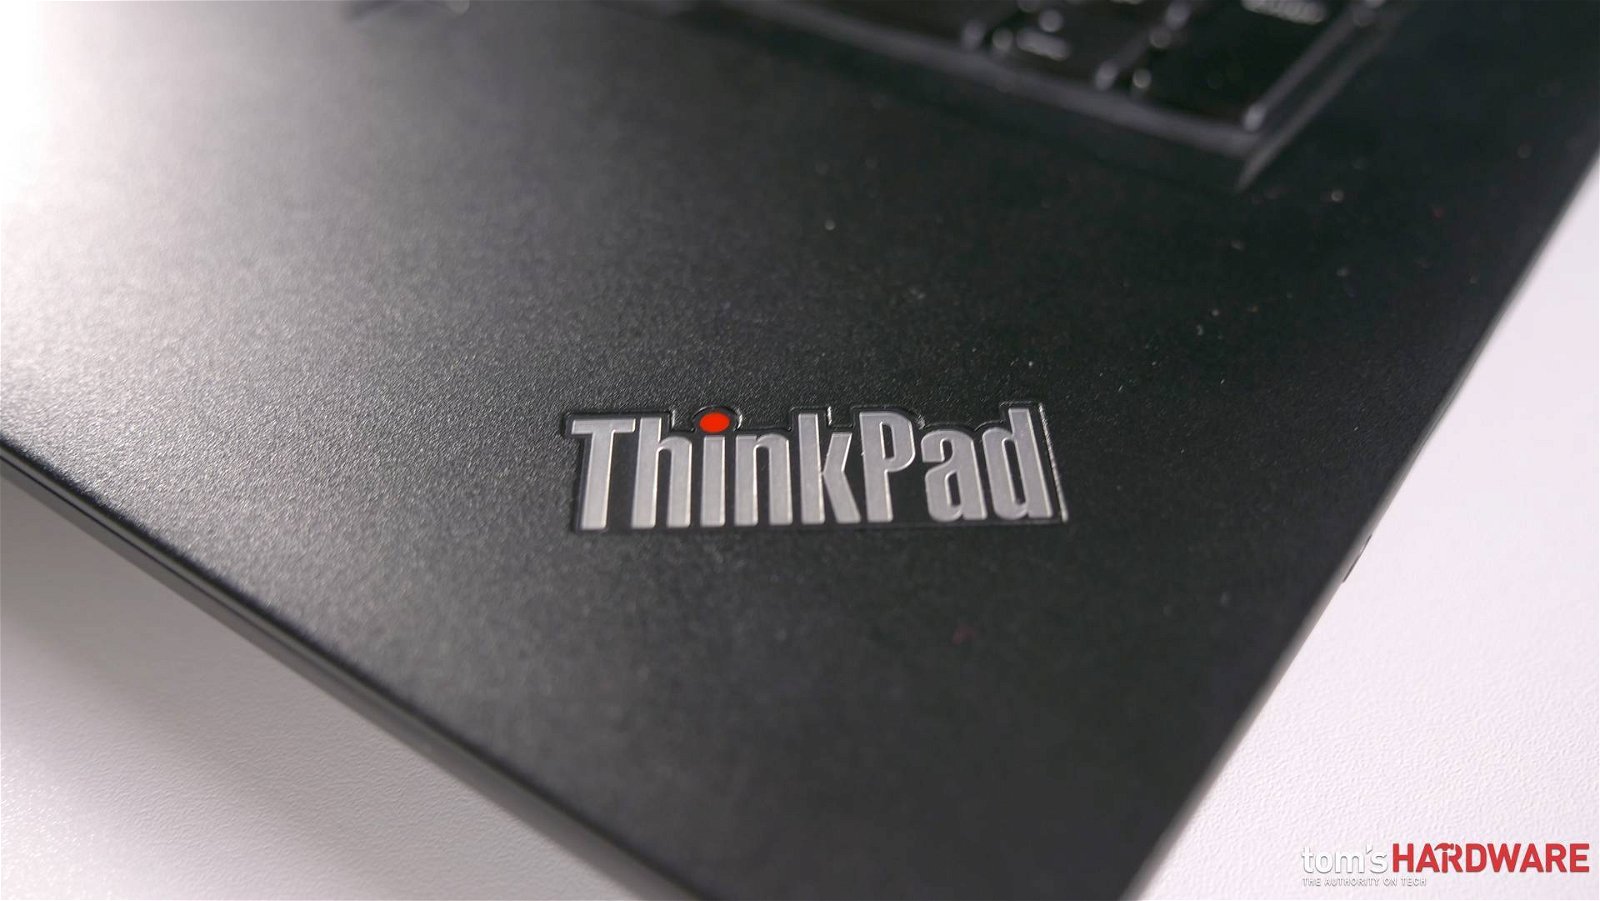 Immagine di Lenovo Thinkpad, problemi con le porte Thunderbolt USB C. Ecco come risolvere